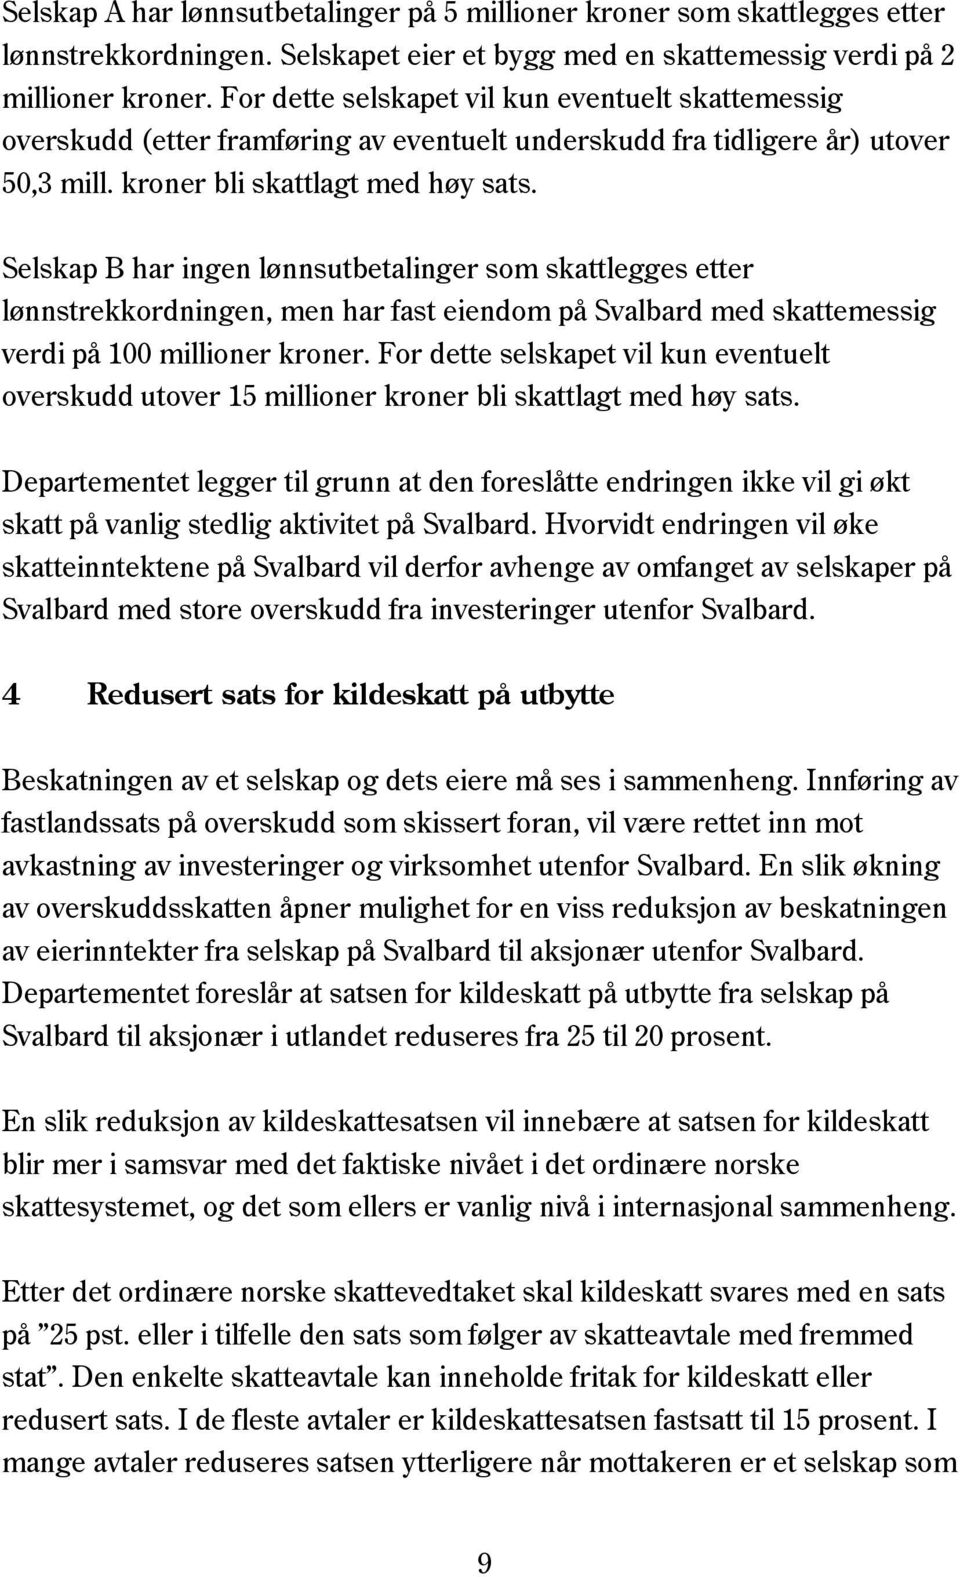 Selskap B har ingen lønnsutbetalinger som skattlegges etter lønnstrekkordningen, men har fast eiendom på Svalbard med skattemessig verdi på 100 millioner kroner.